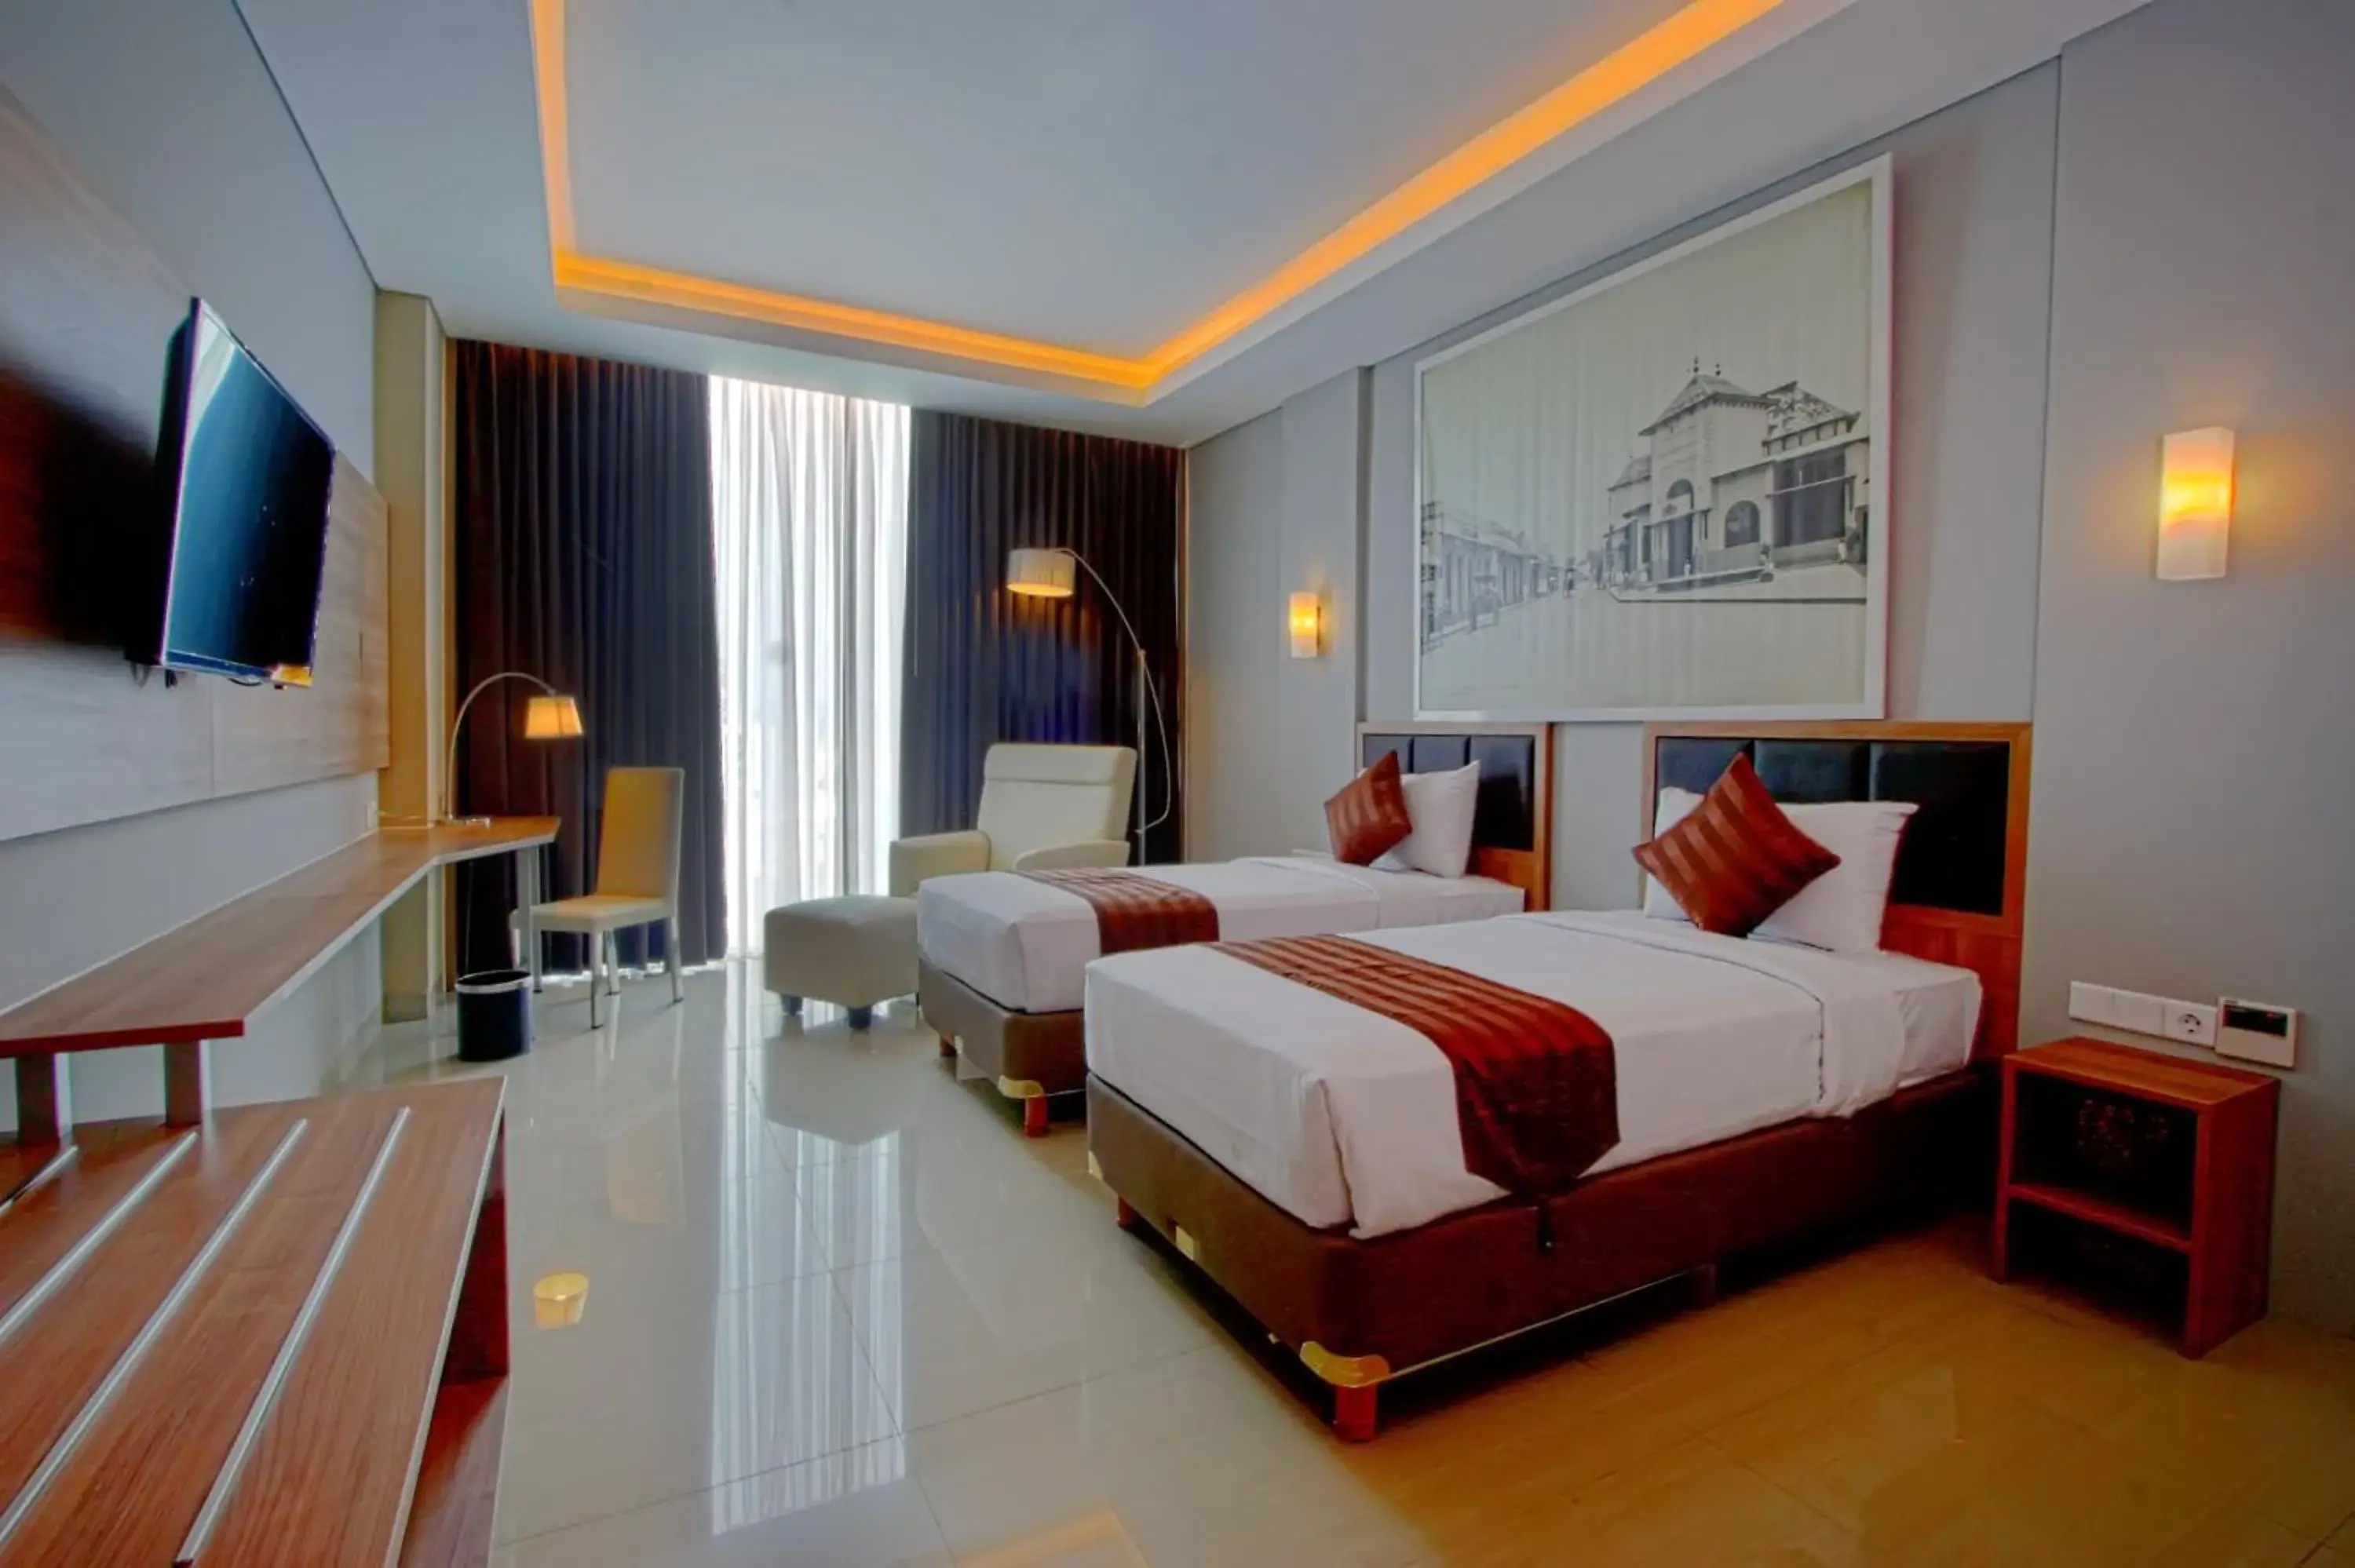 Bedroom, Room Photo in Pasar Baru Square Hotel Bandung